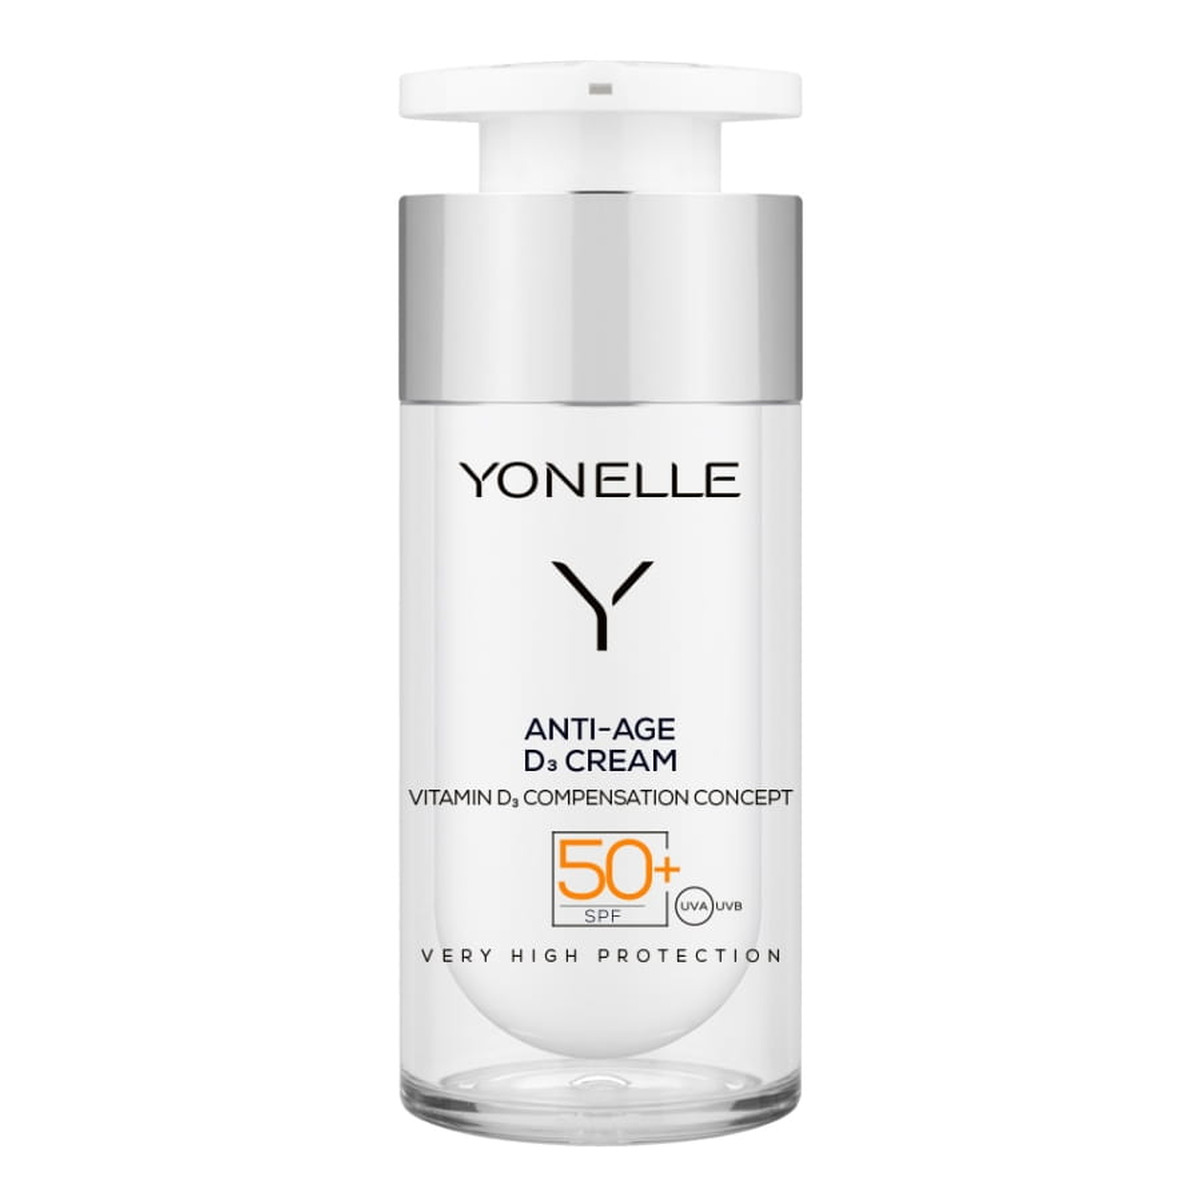 Yonelle Anti-Age D3 Cream Przeciwzmarszkowy krem do twarzy SPF 50 + 30ml